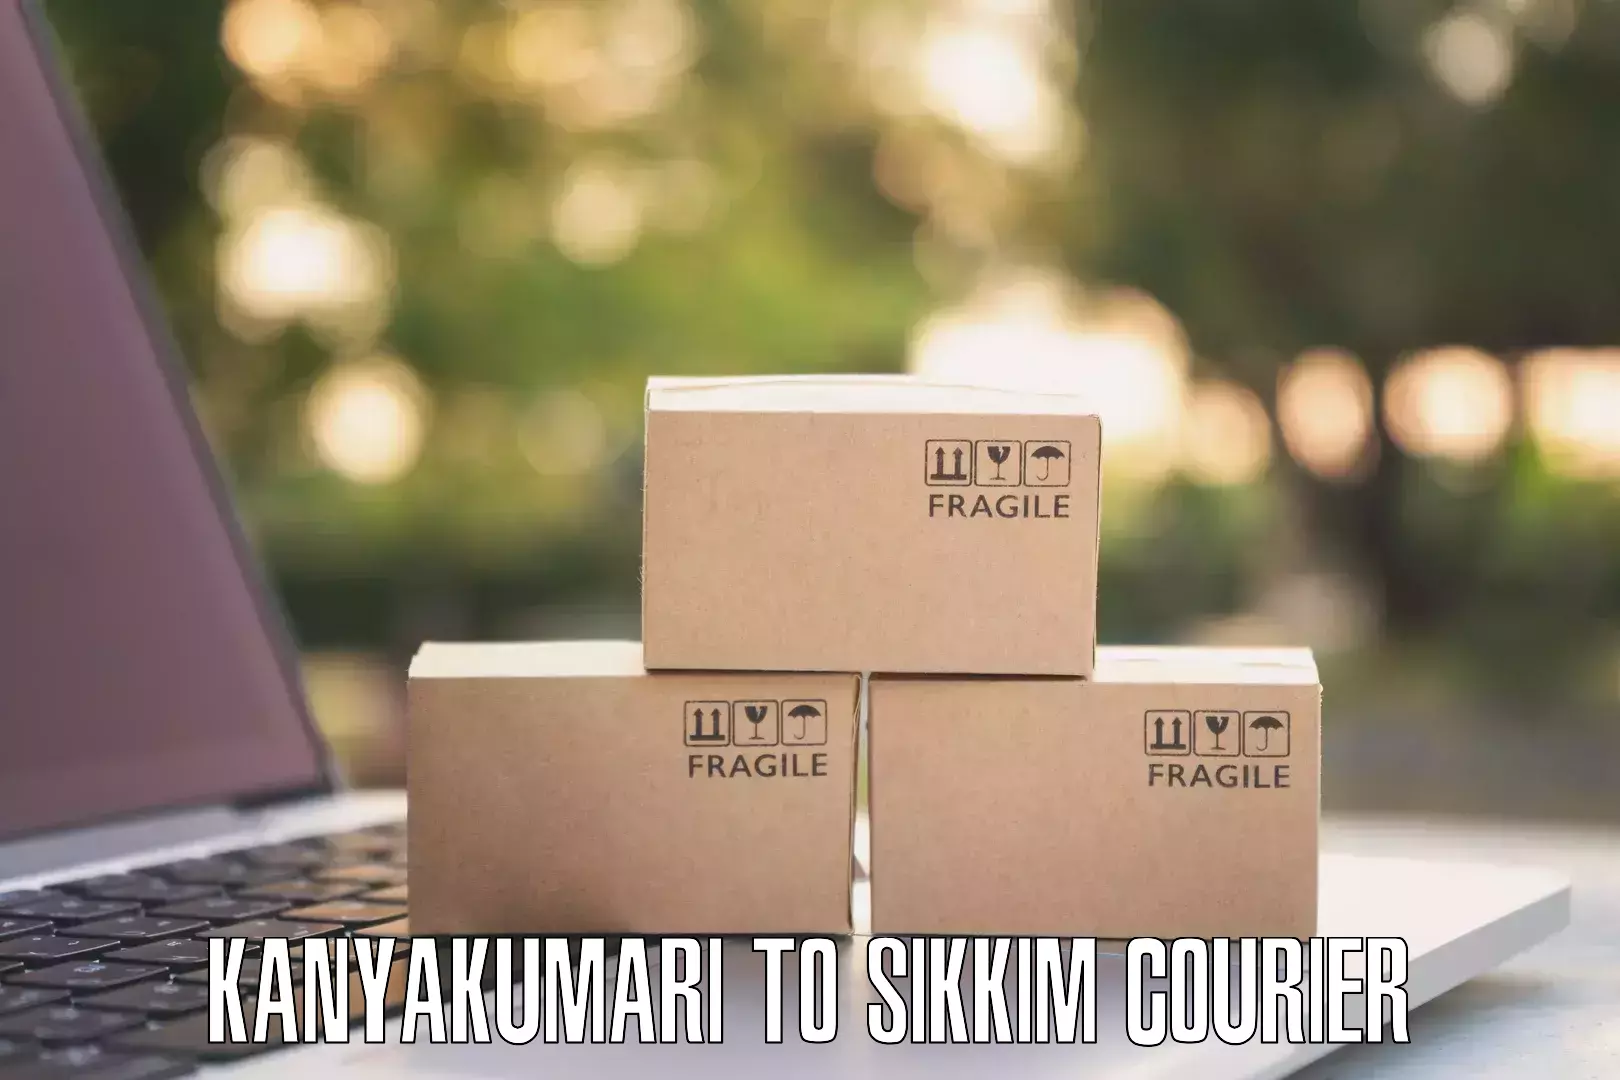 Advanced shipping services Kanyakumari to Mangan